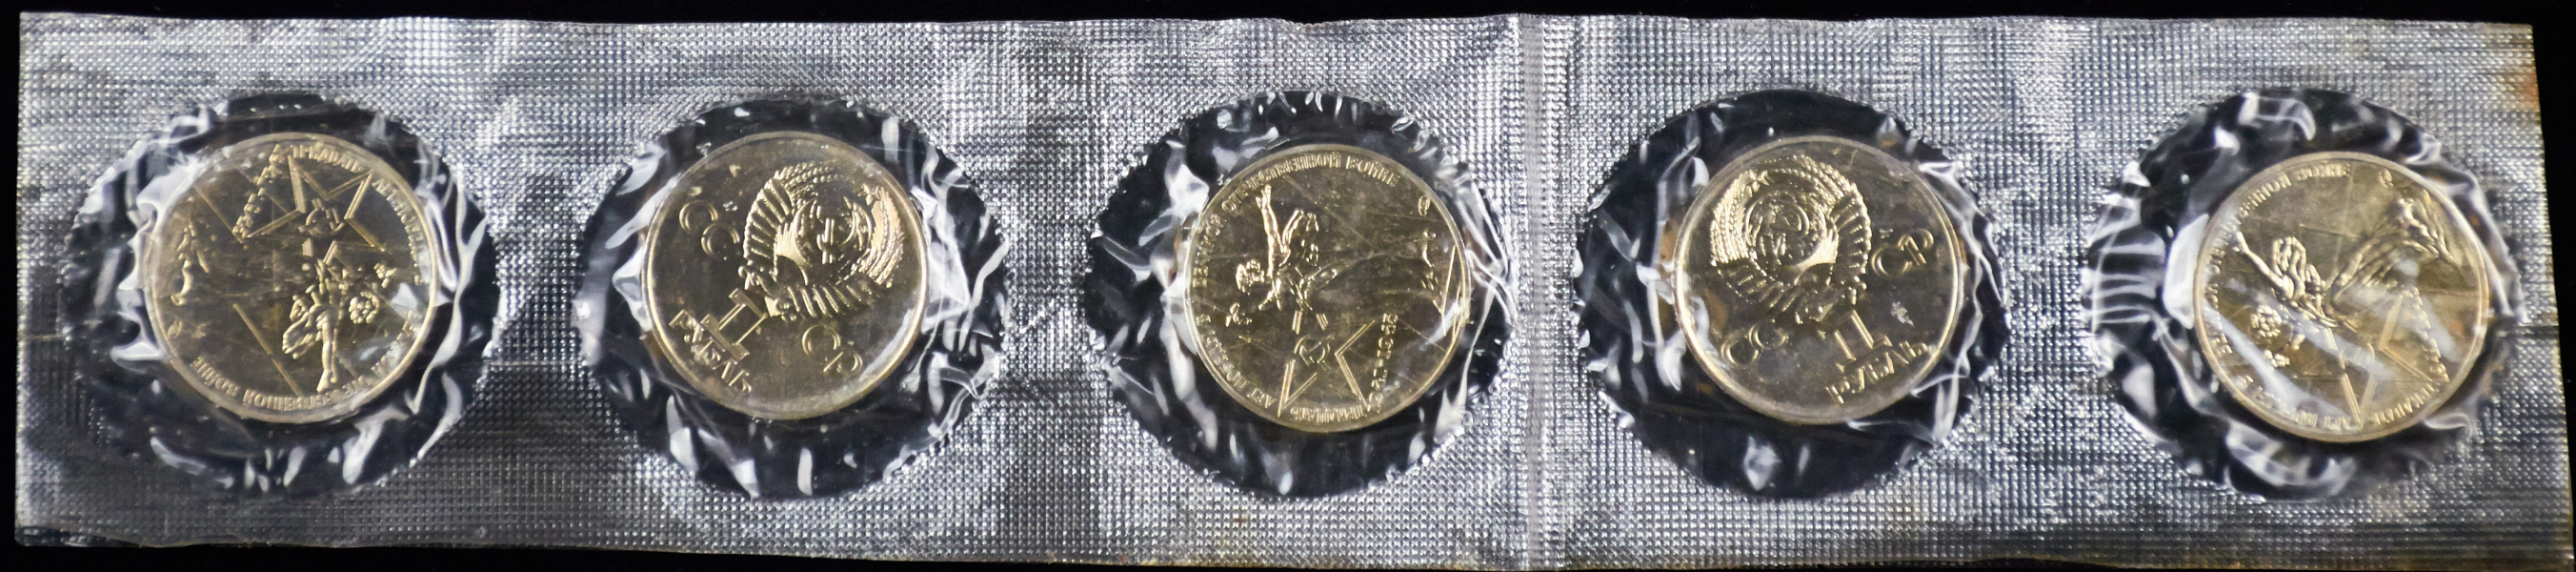 Набор из 5-ти монет 1 рубль 1975 "30 лет Победы" (лист-запайка)